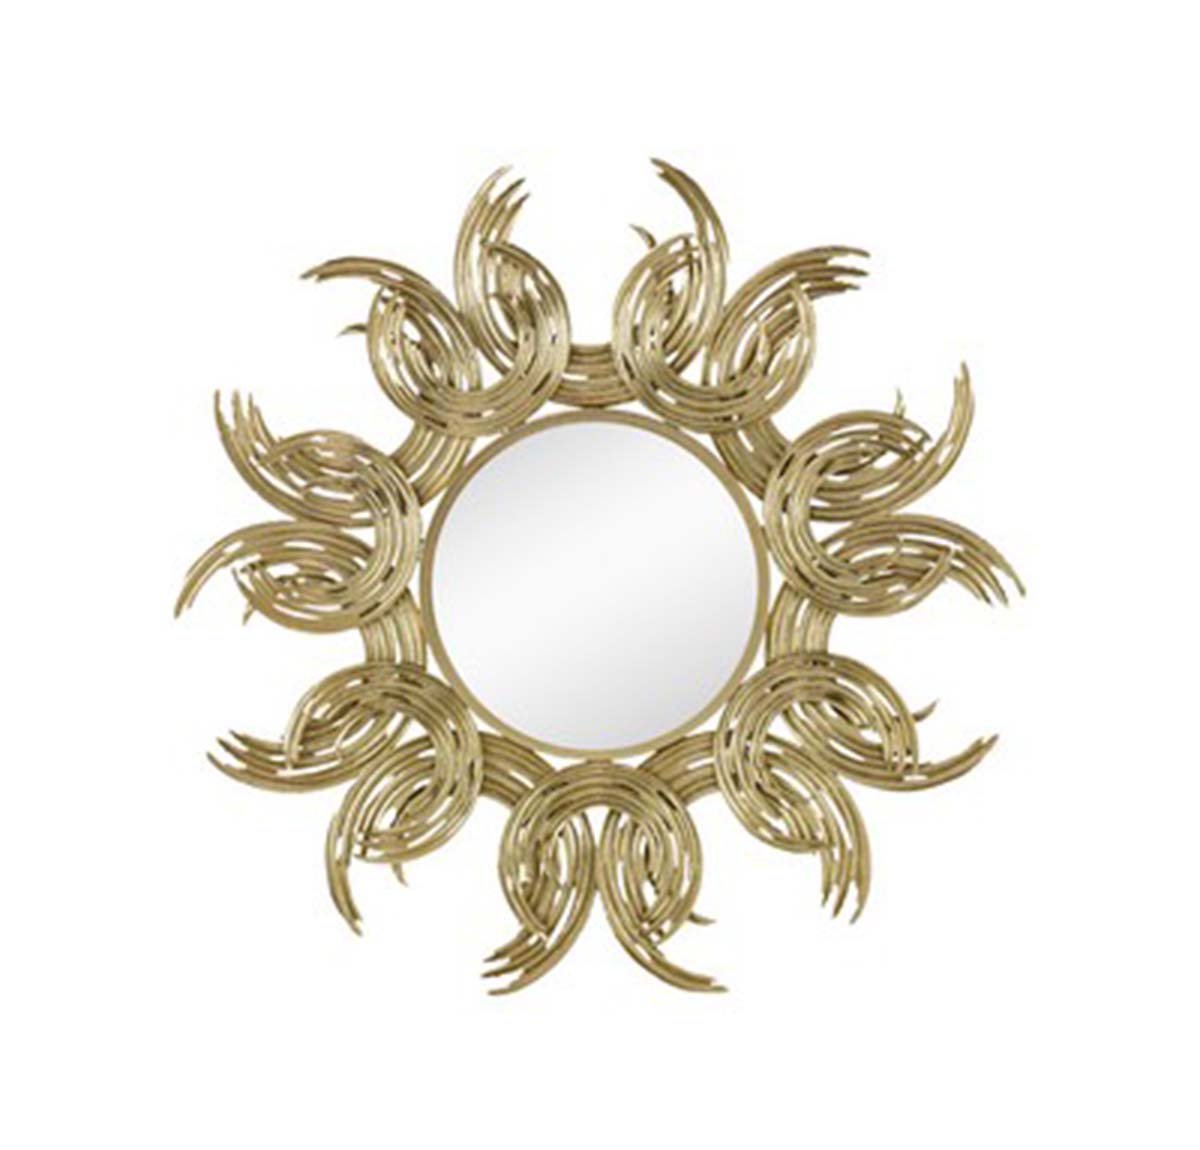 Aurelie Round Wall Hanging Metal Mirror - Gold | Mirrors | Home Decor